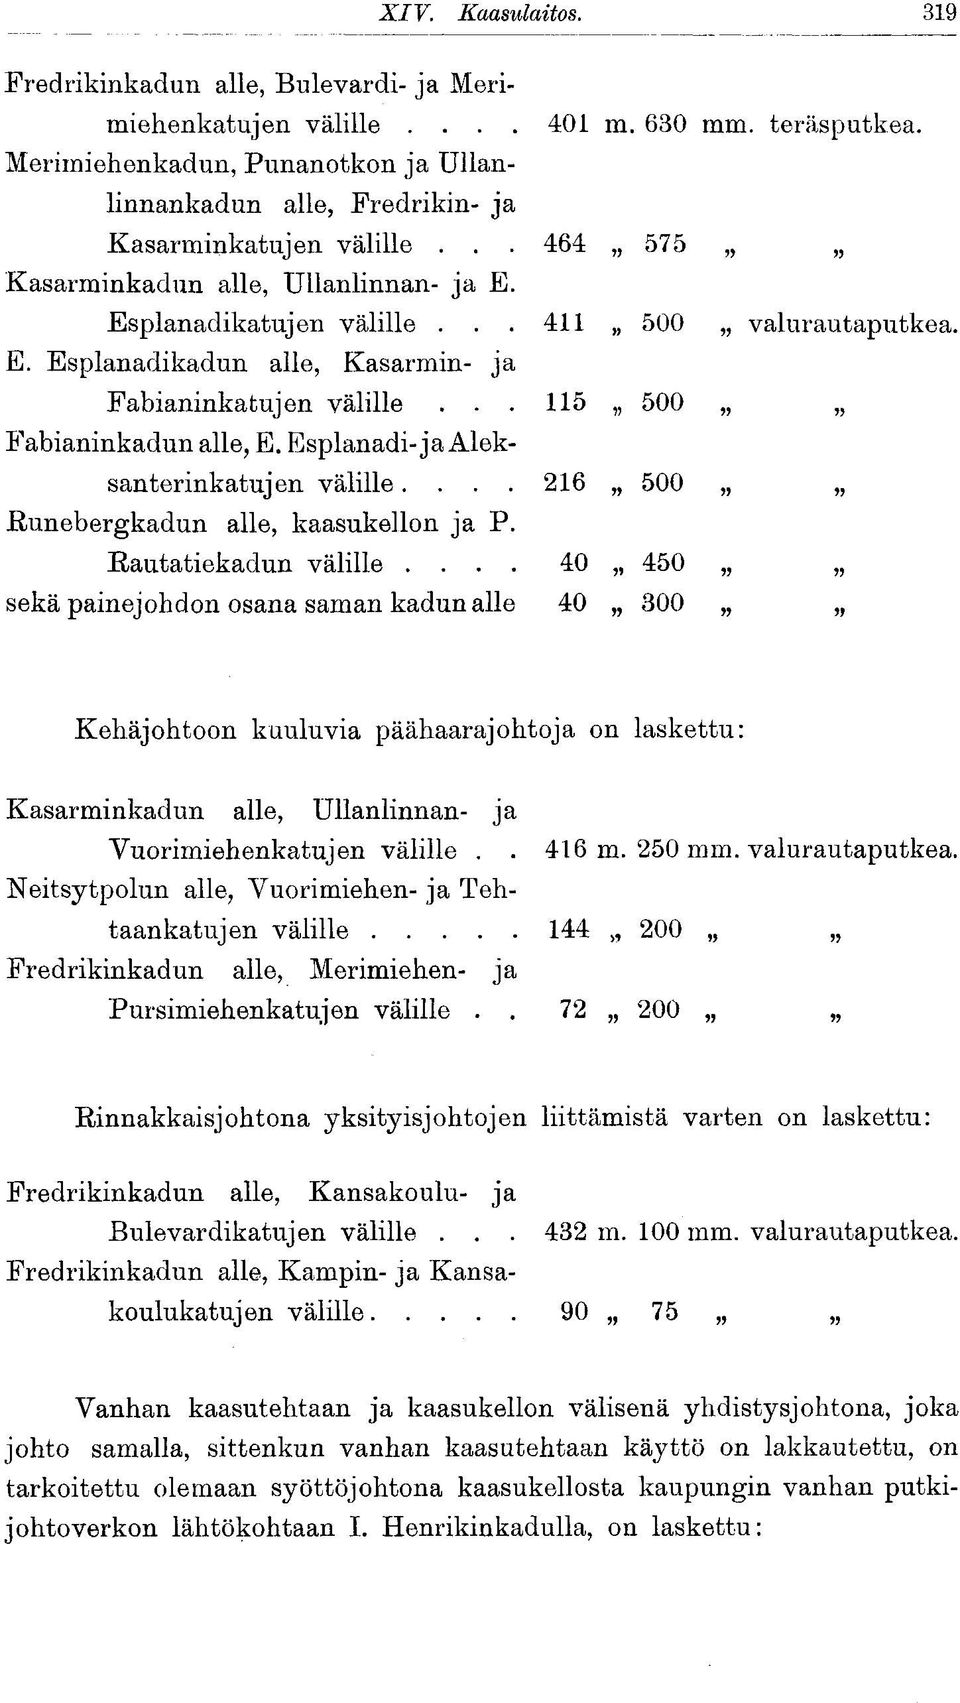 .. 115 500 Fabianinkadun alle, E. Esplanadi-ja Aleksanterinkatujen välille.... 216 500 Runebergkadun alle, kaasukellon ja P. Rautatiekadun välille.